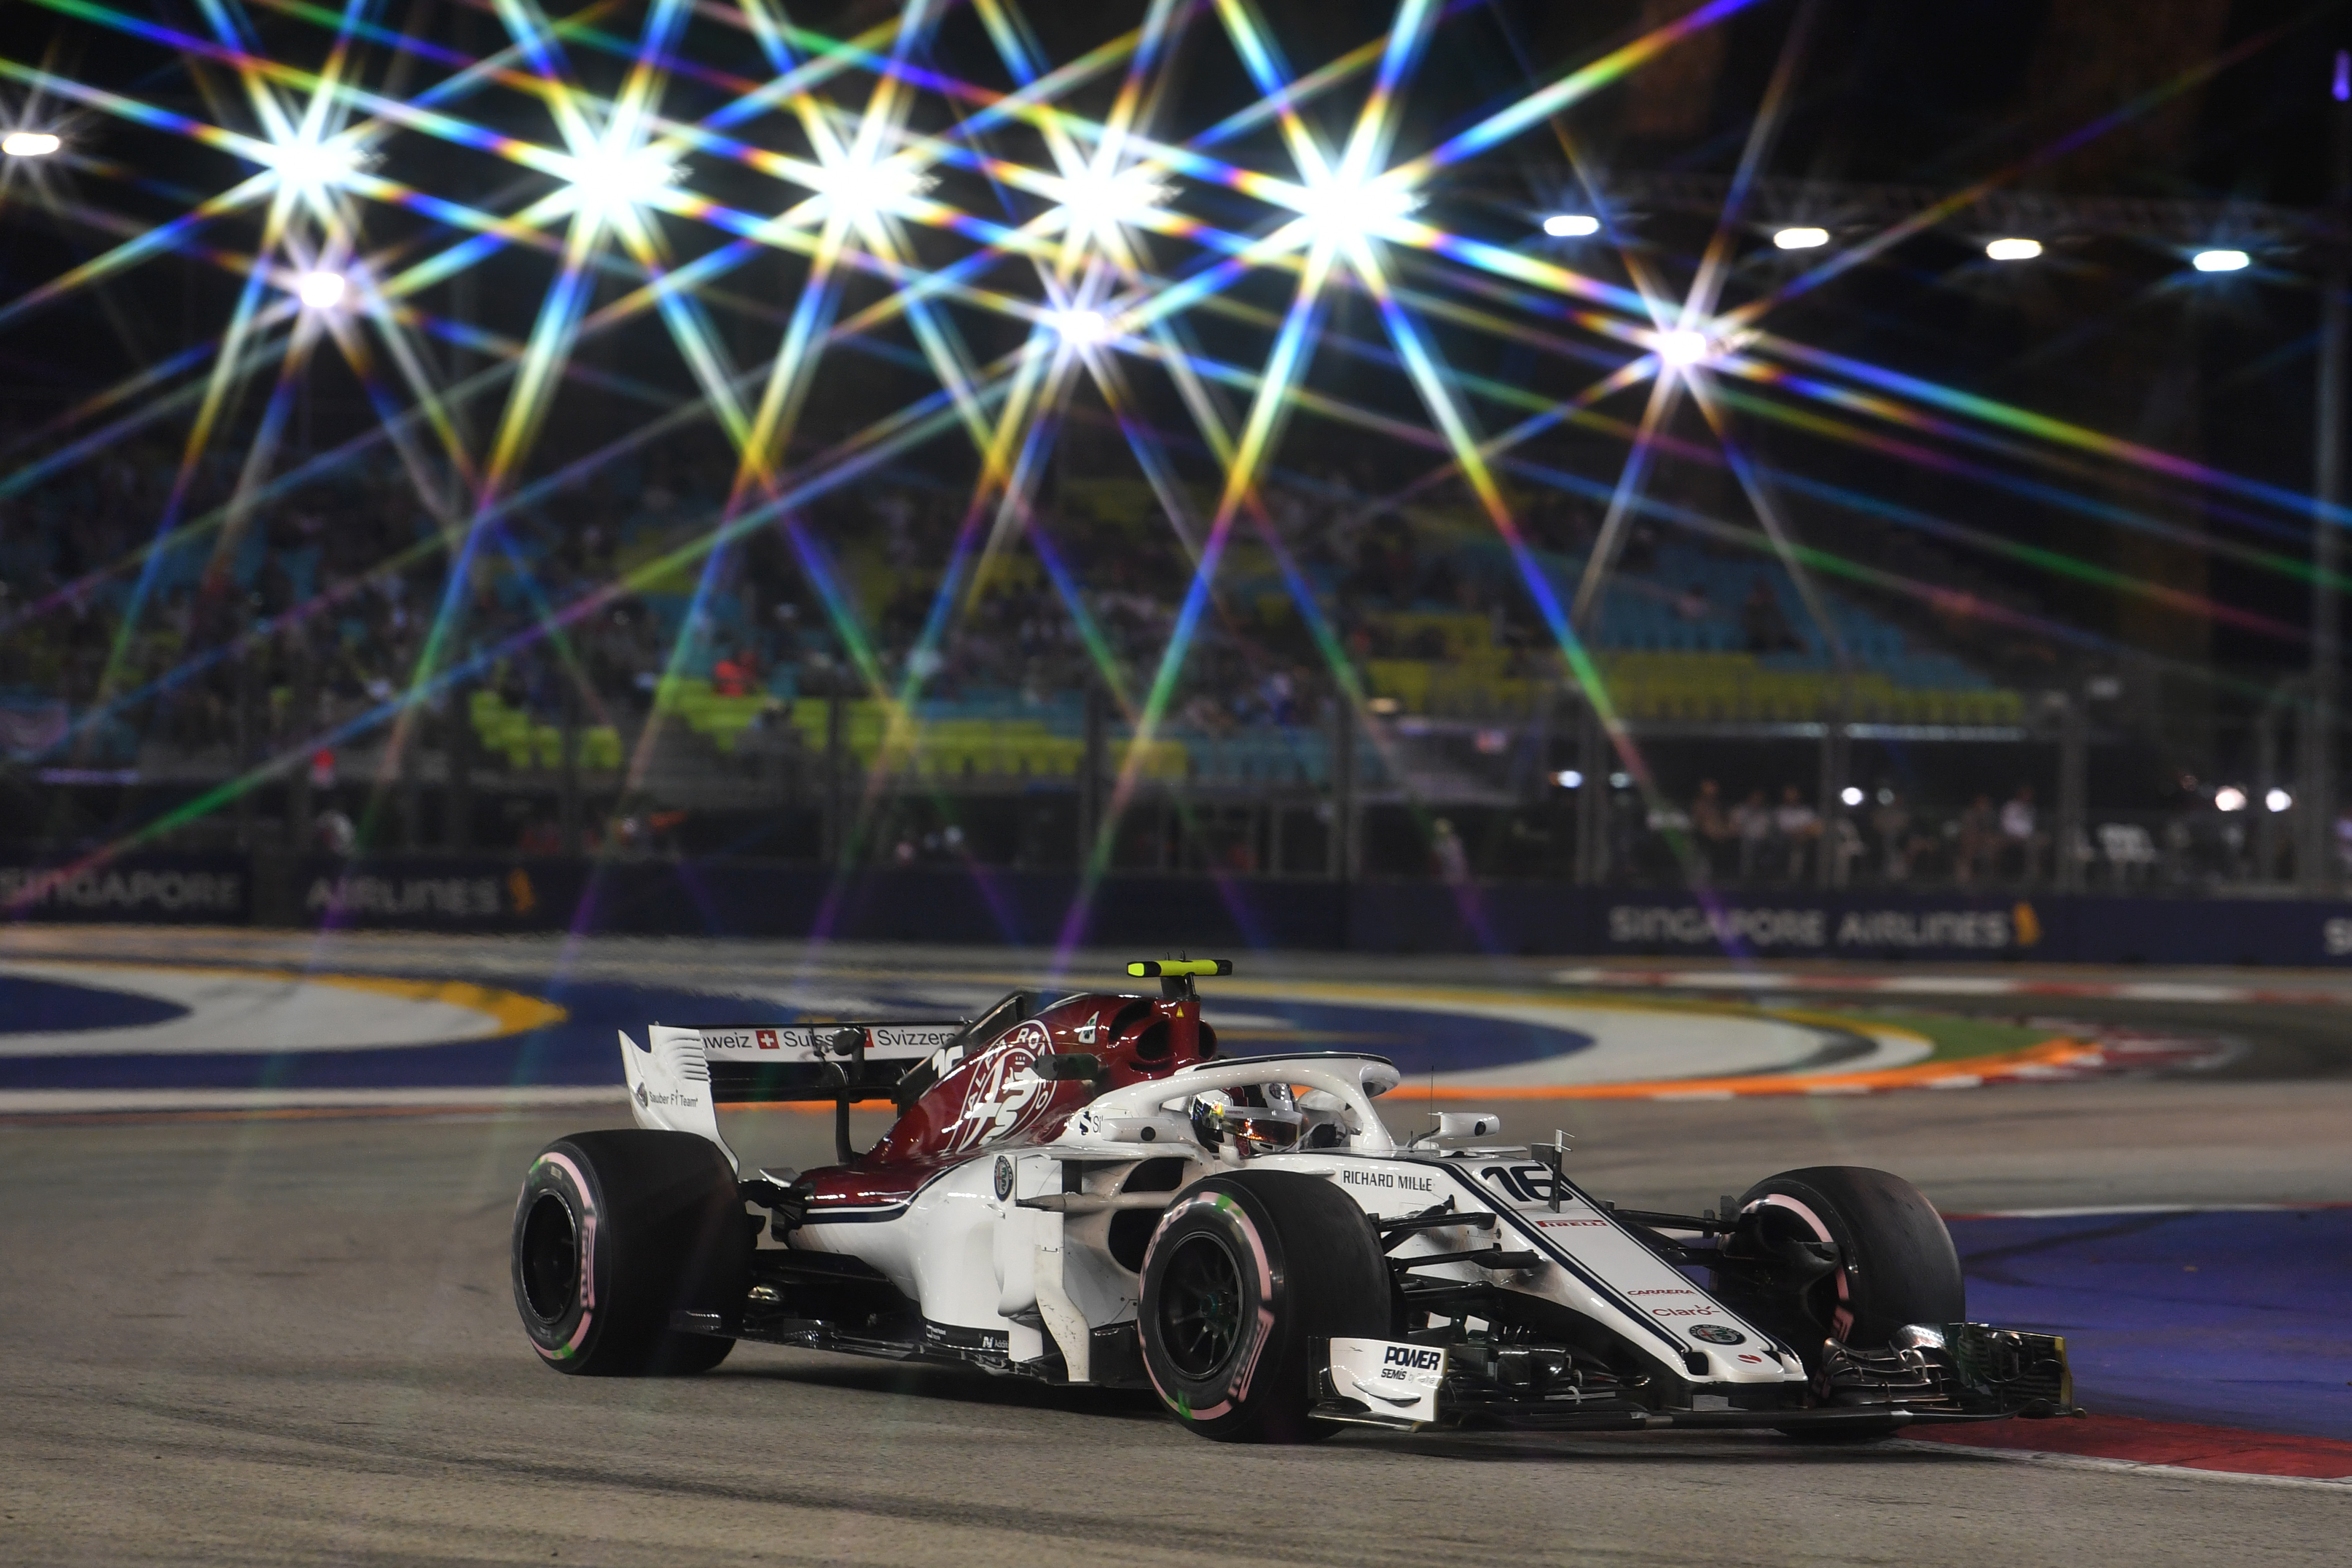 Singapore Grand Prix Practice